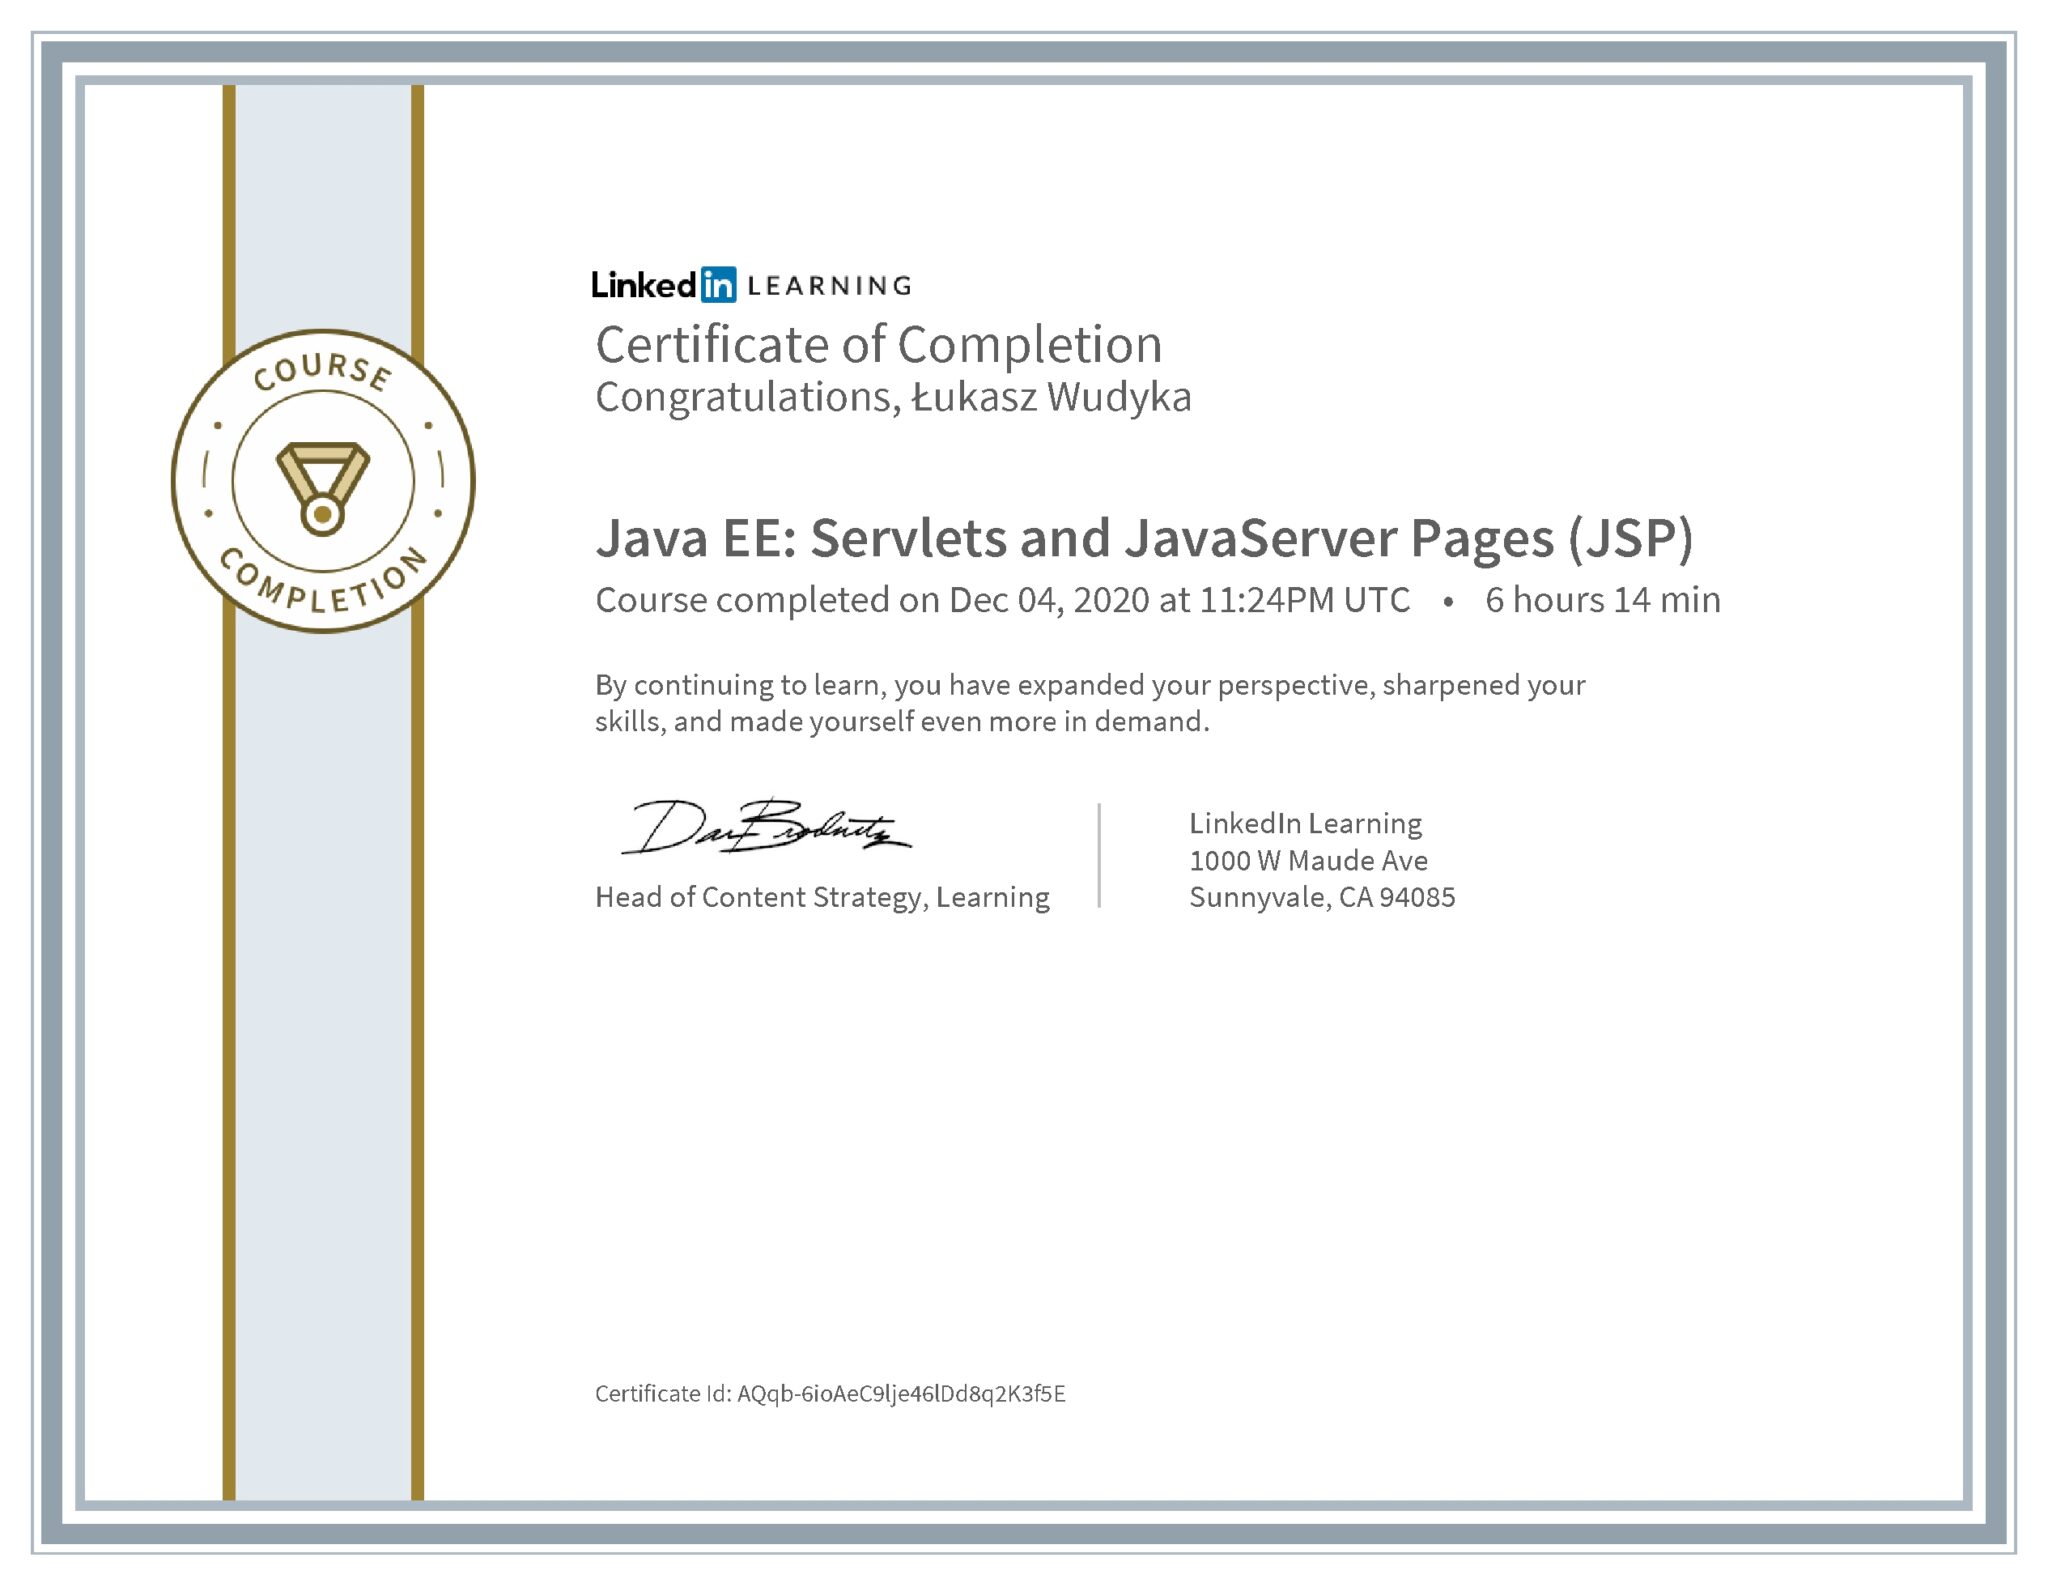 Łukasz Wudyka certyfikat LinkedIn Java EE: Servlets and JavaServer Pages (JSP)